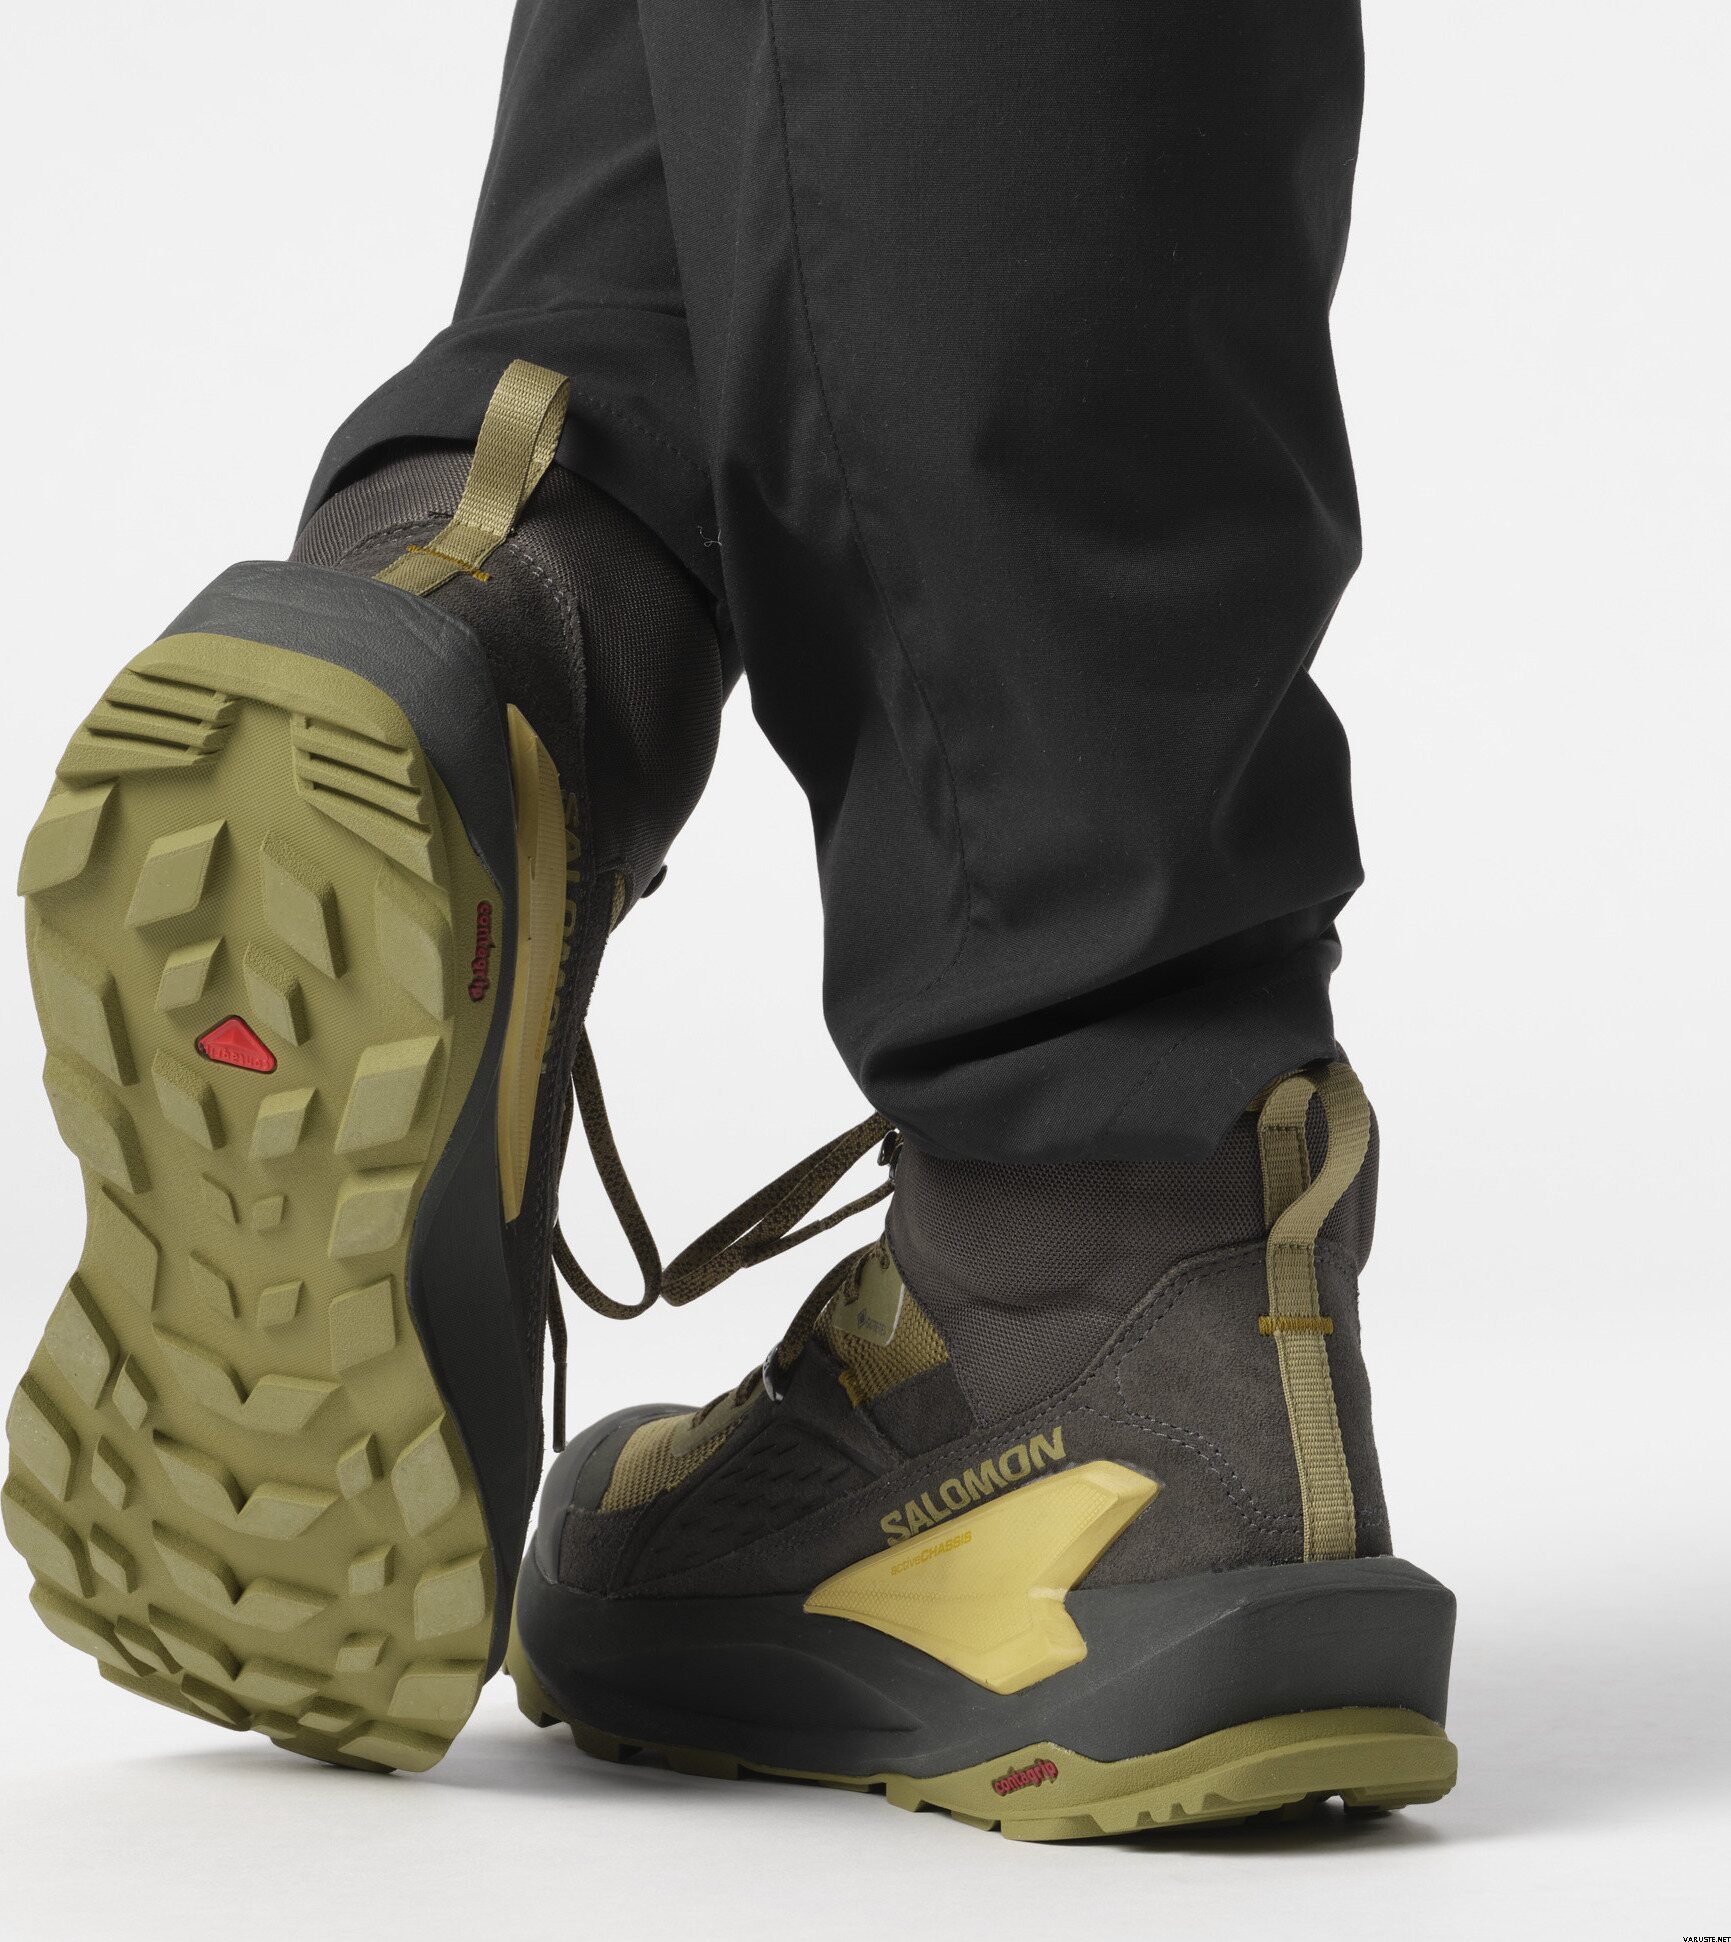 Salomon Elixir Mid GTX Mens | Men's outdoor shoes | Varuste.net English